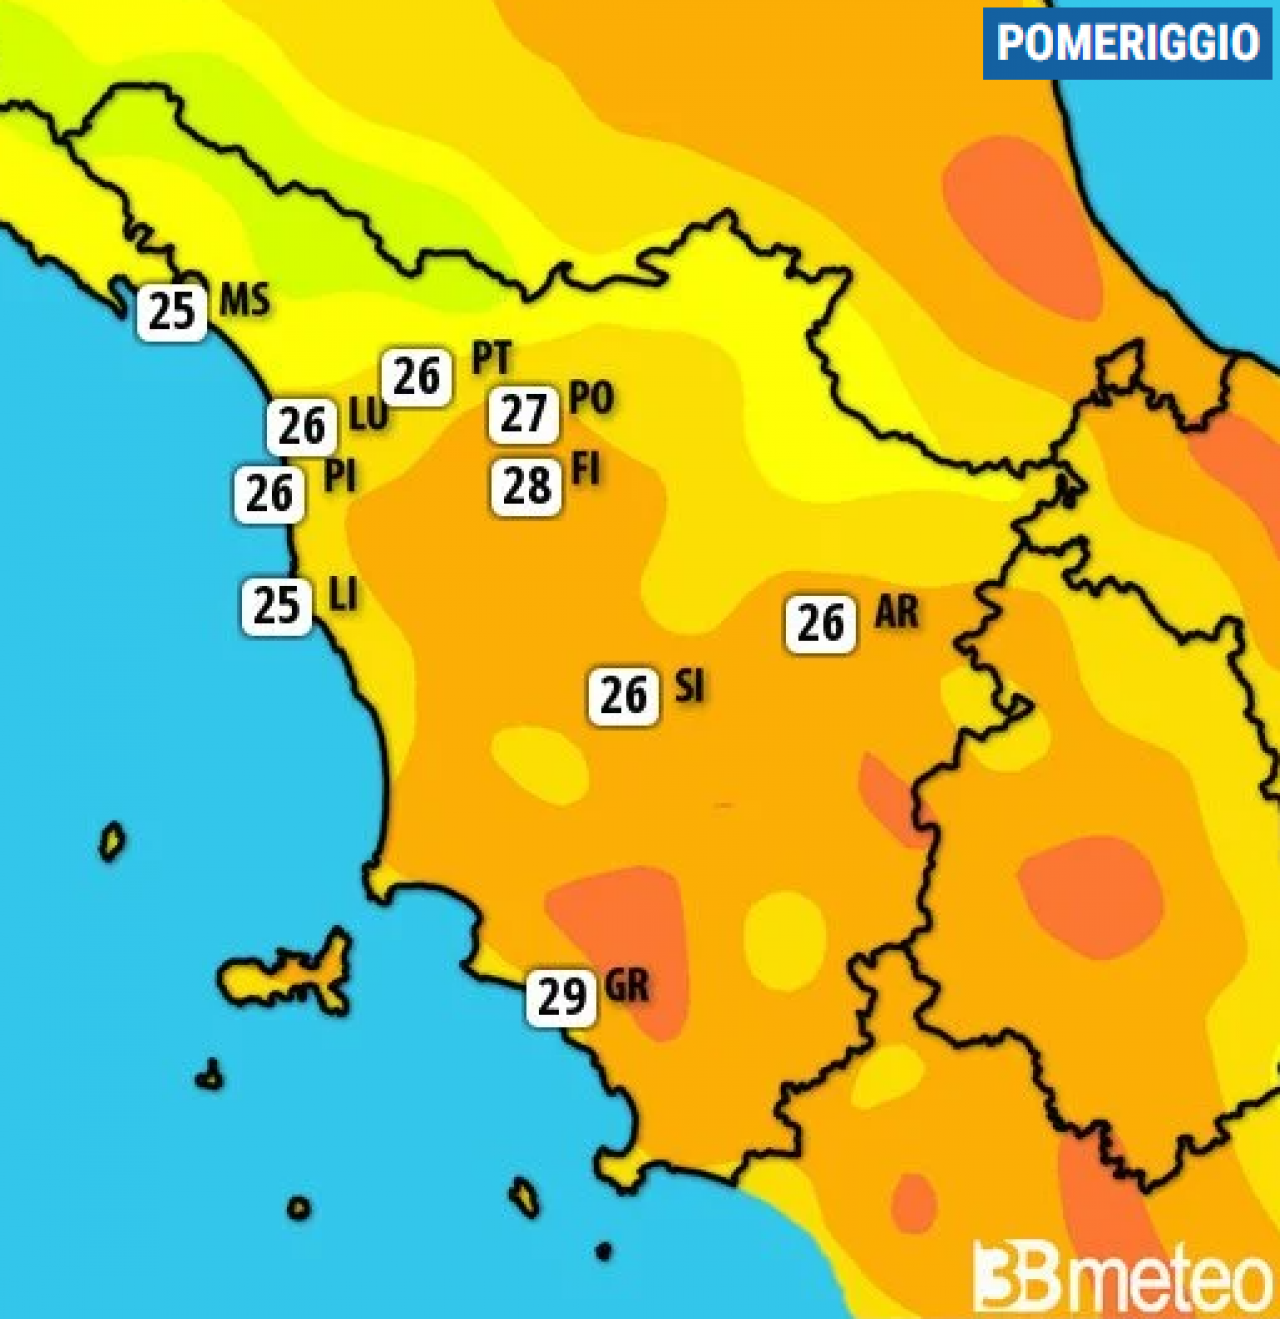 Meteo Toscana. Settimana tra schiarite e qualche pioggia, caldo gradevole